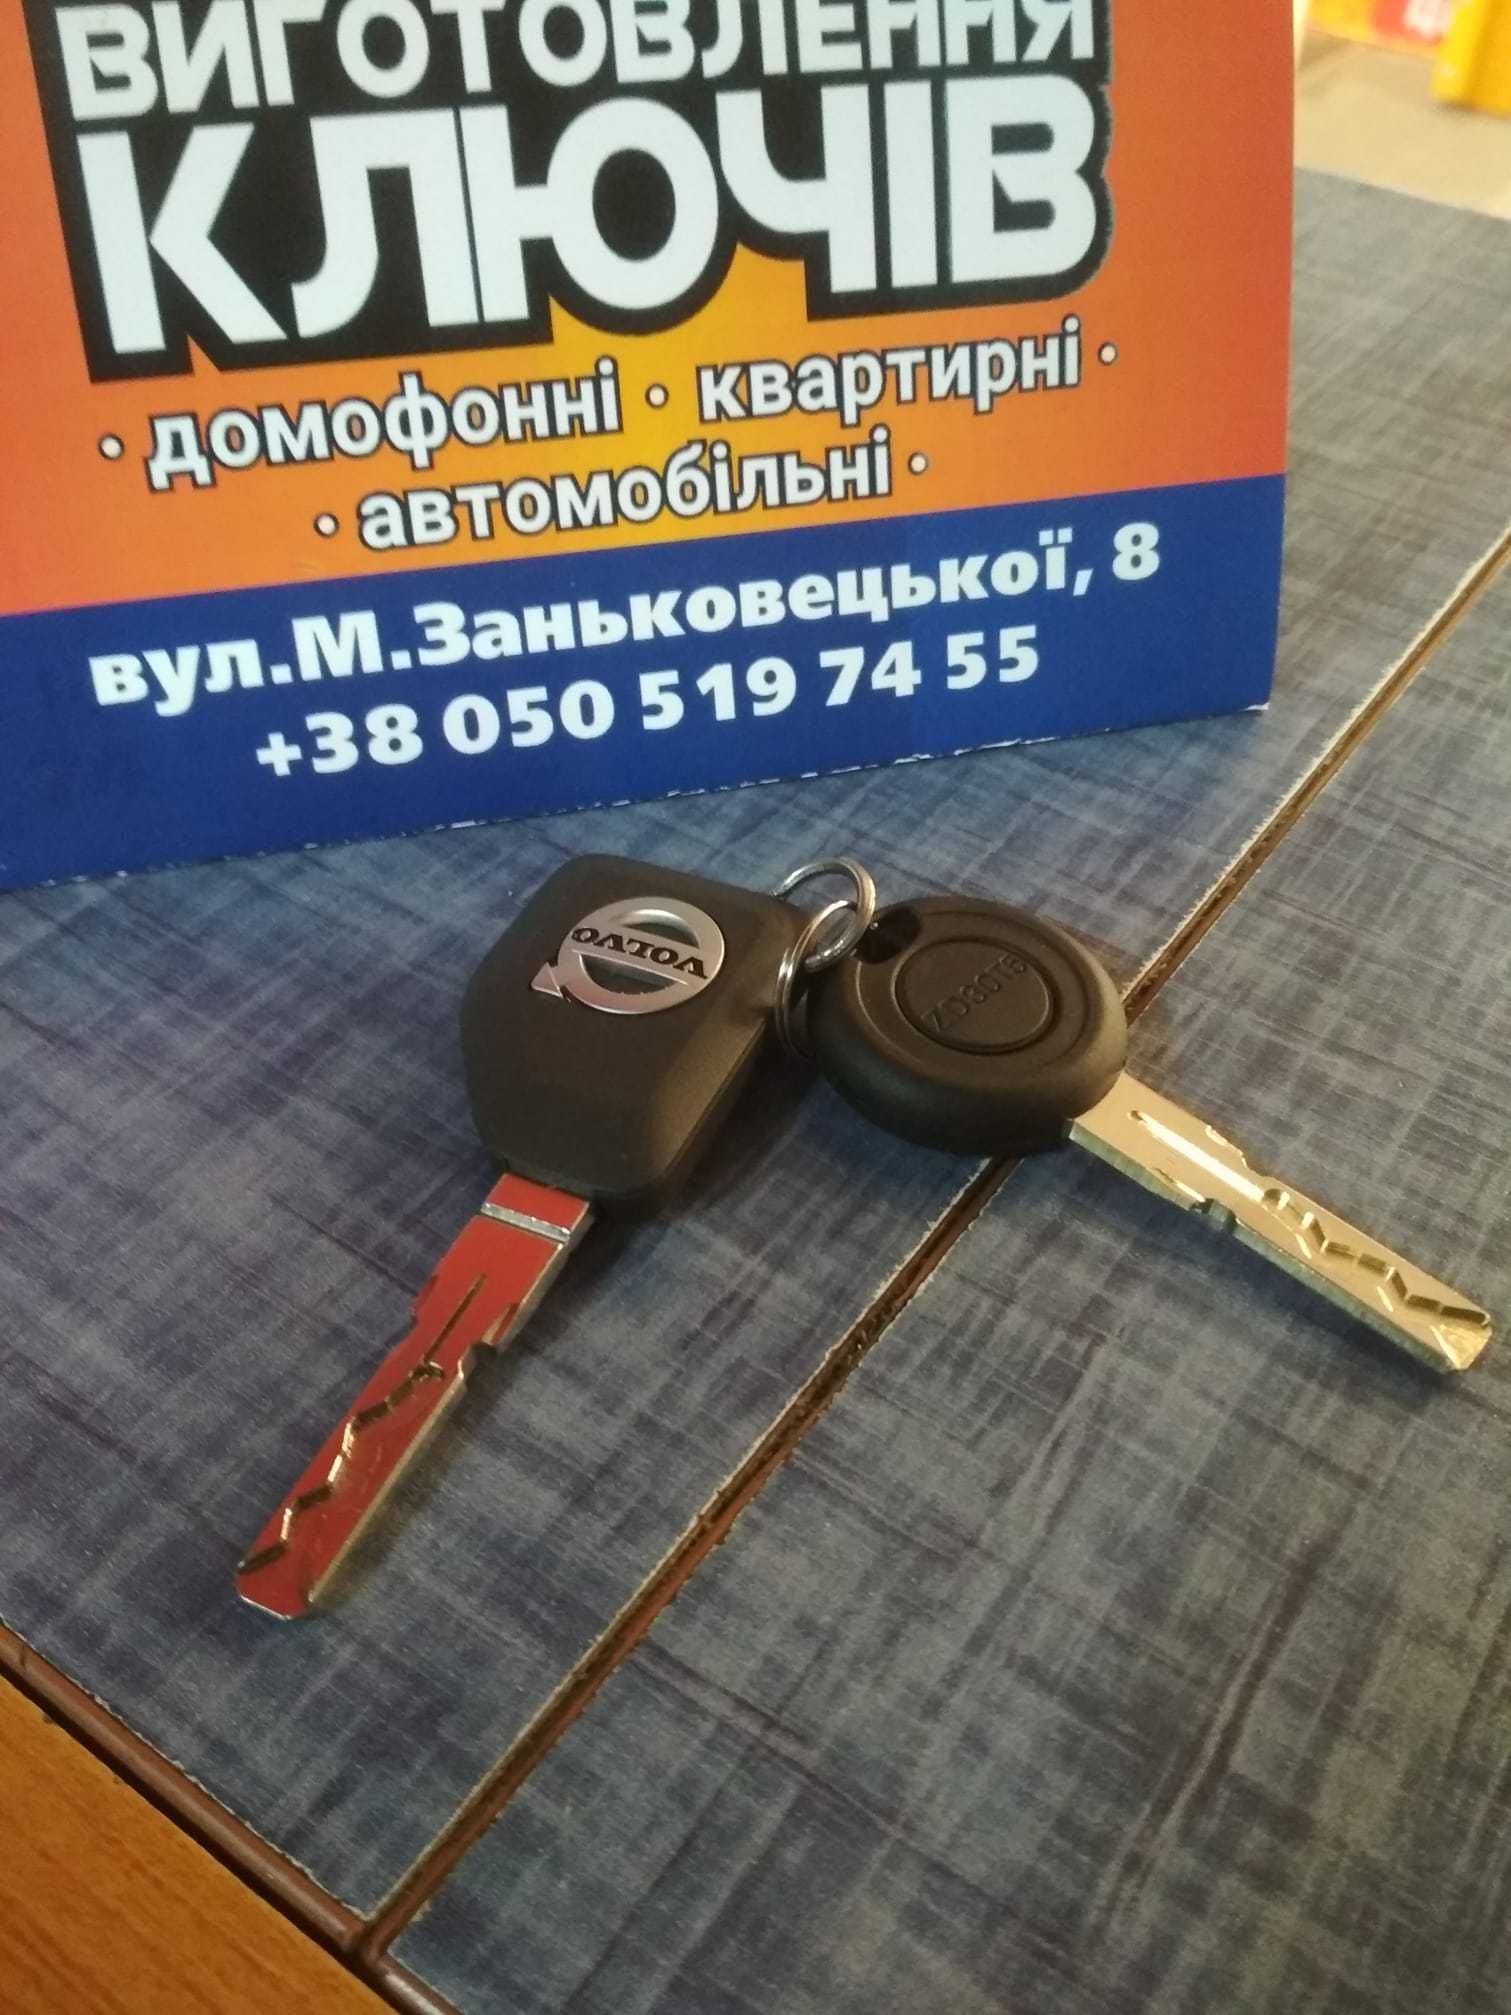 Виготвлення автомобільних та квартирних ключів.